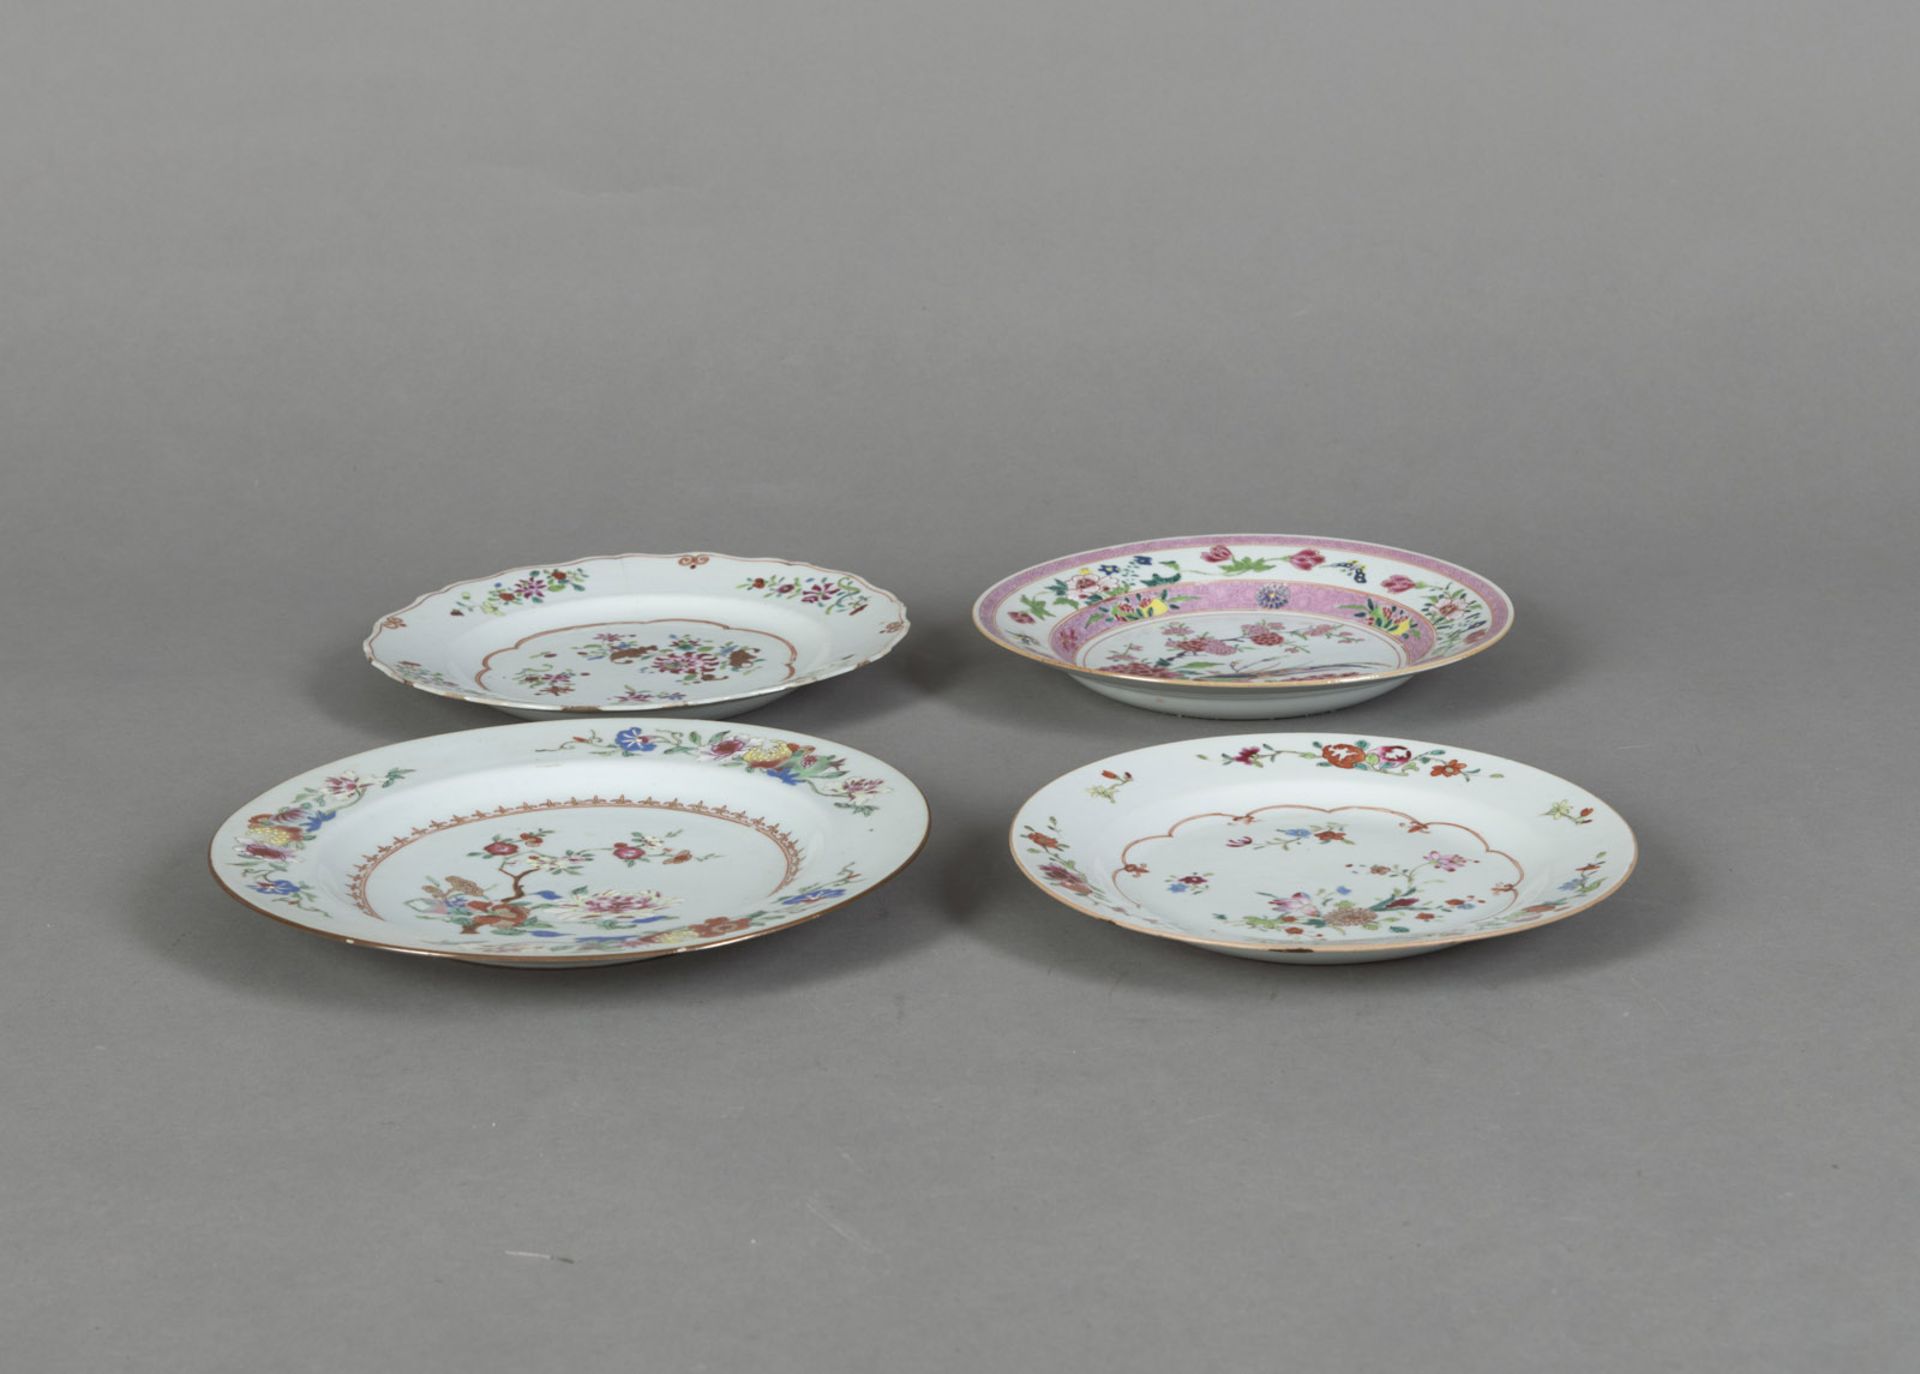 Vier 'famille rose'-Teller aus Porezallan mit Vogel- und Blumendekor - Bild 2 aus 3